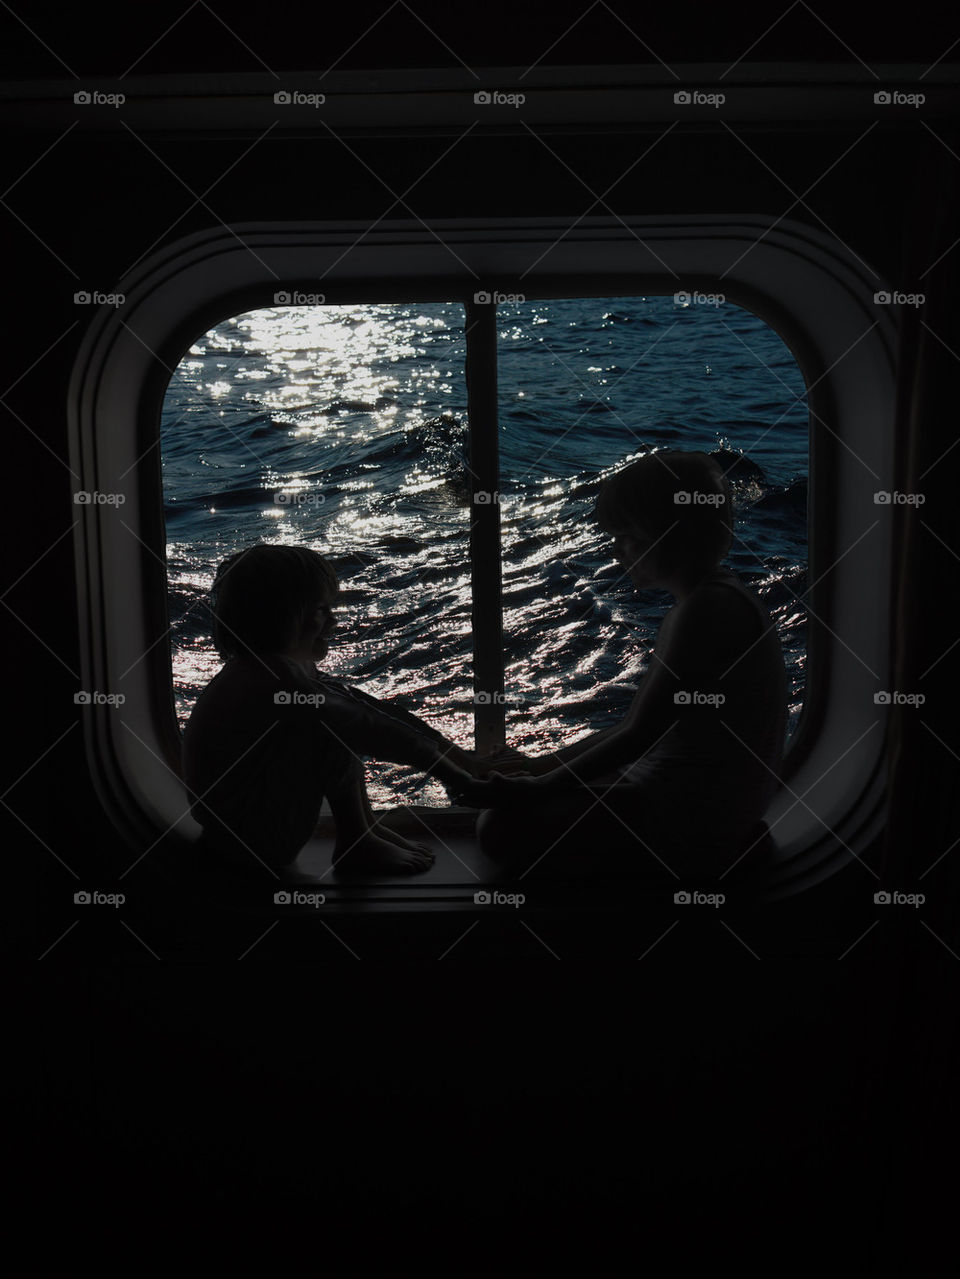 Children on a ship's bullseye